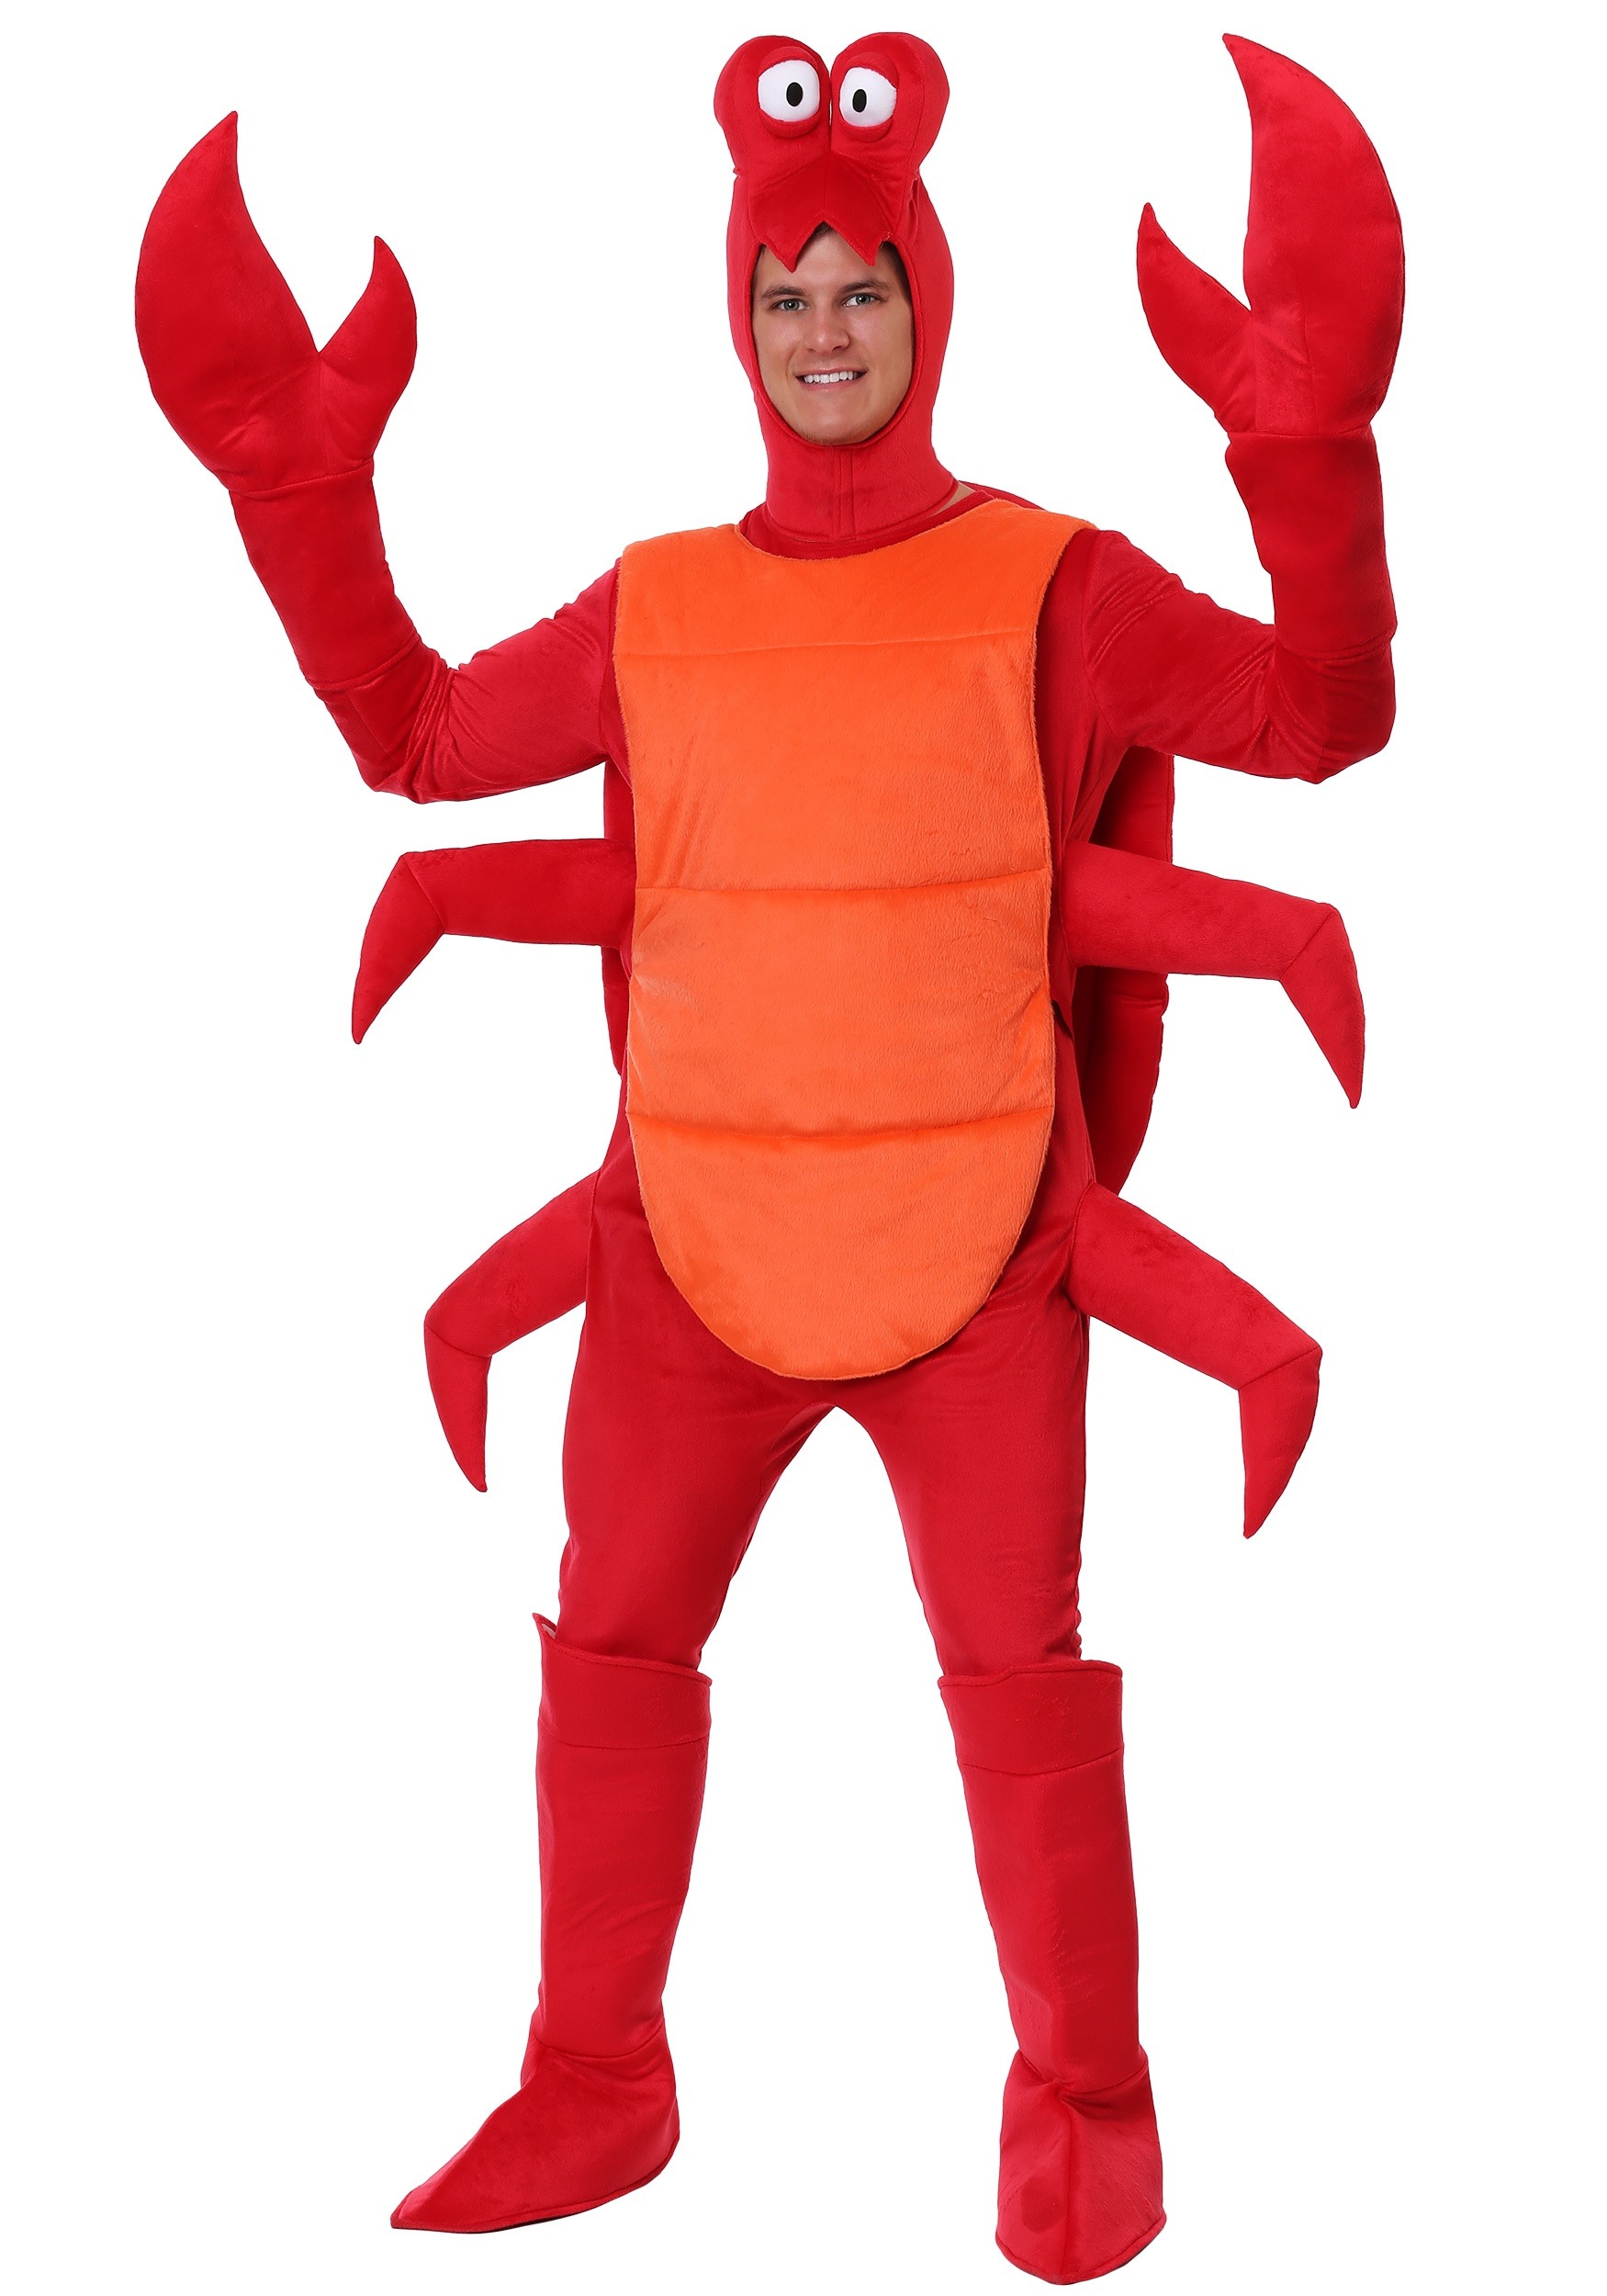 16.) Crab Costume for Men